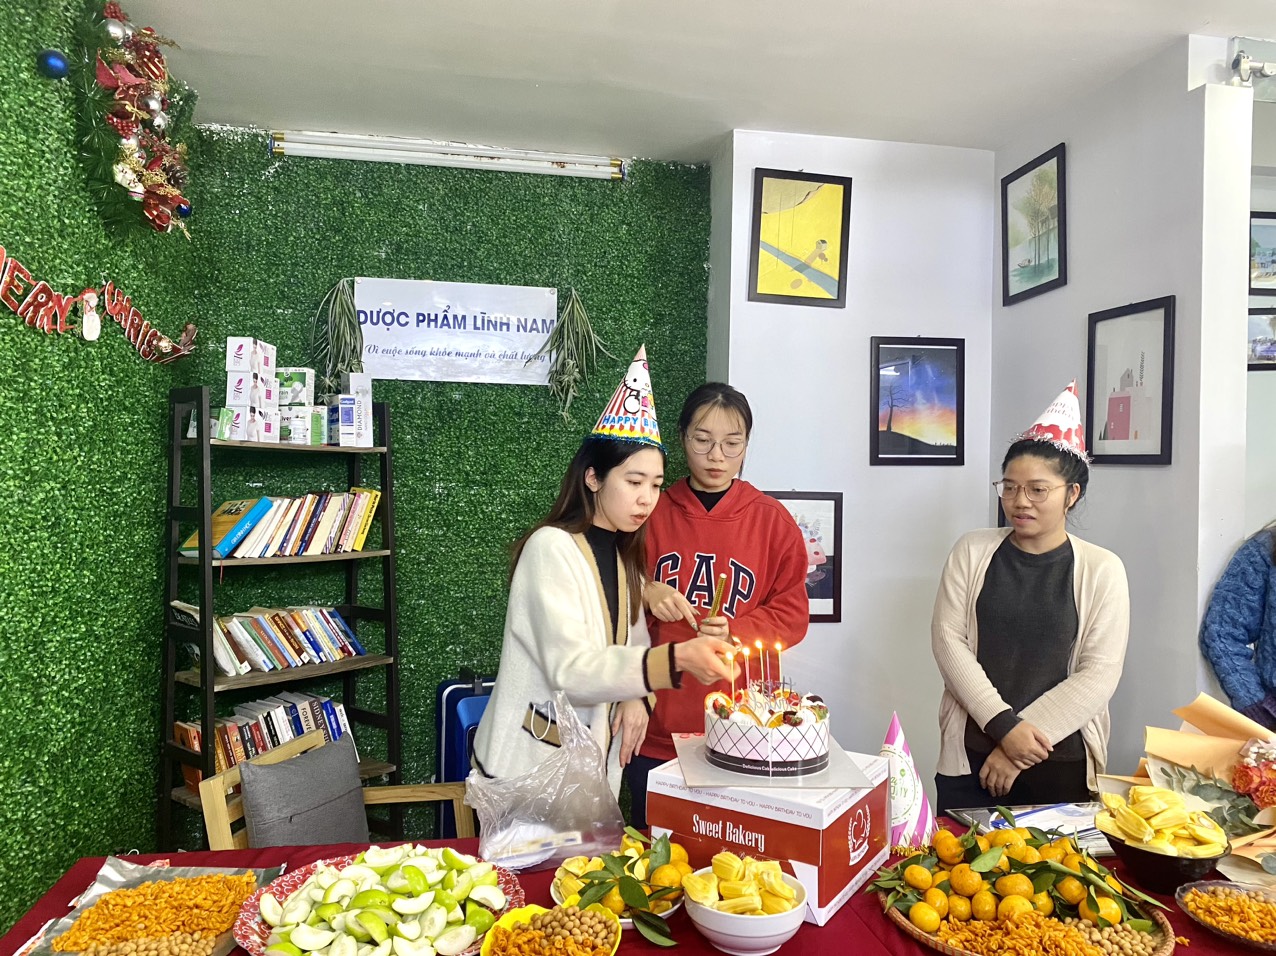 Dược phẩm Lĩnh Nam tổ chức tiệc sinh nhật tháng 2 cho cán bộ nhân viên